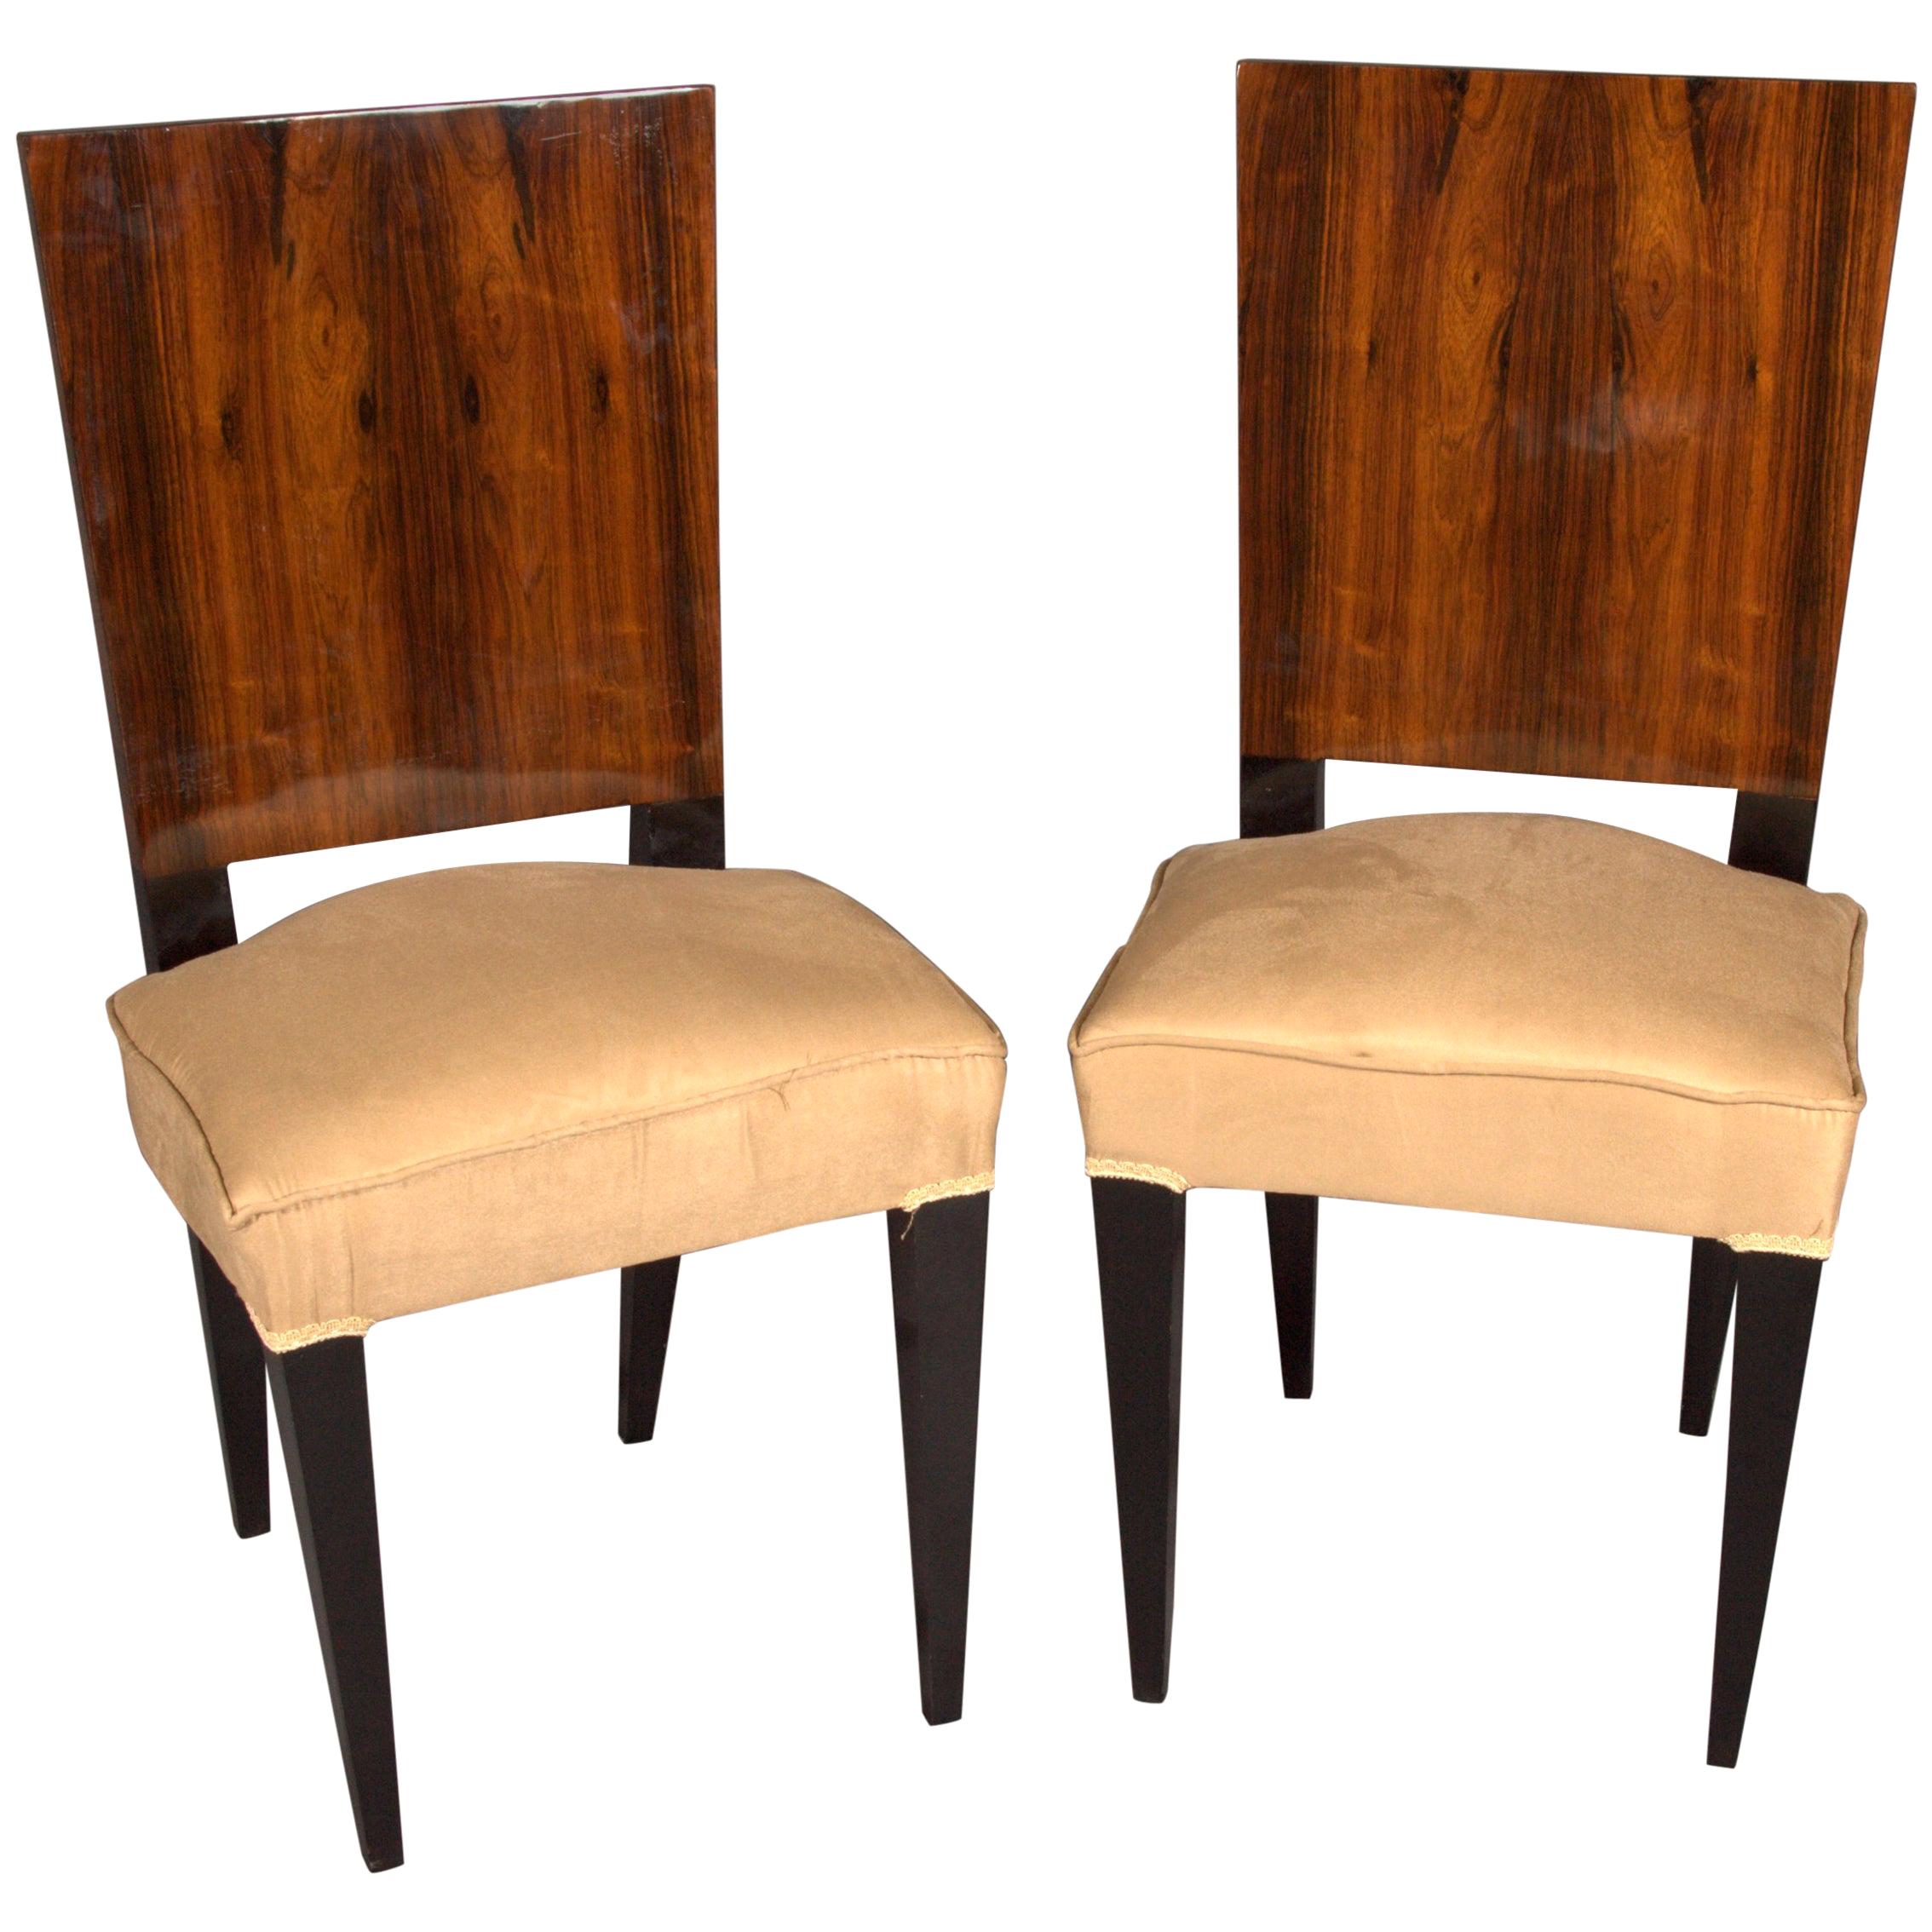 1 Elegant Chair in Art Deco Style, Rosewood Veneer